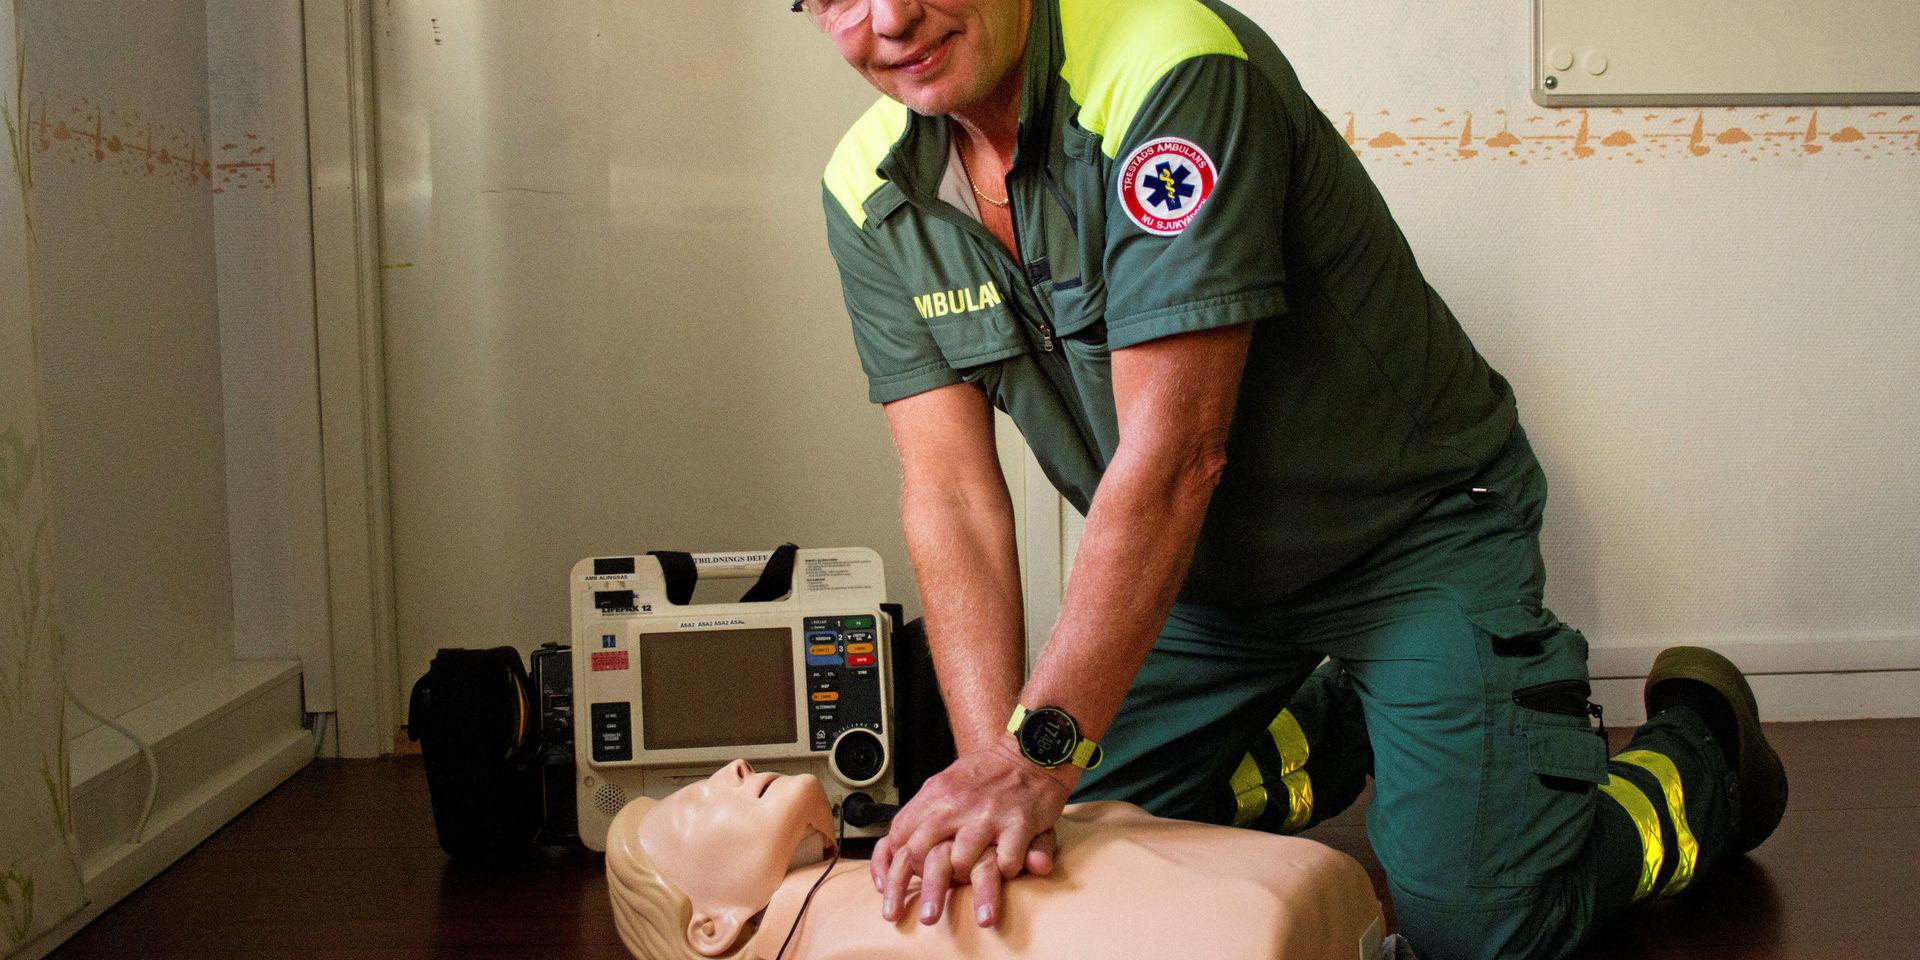 Bror Widén, ambulanssjuksköterska, kommer att finnas på plats på Torp på lördag för att visa och informera om HLR.